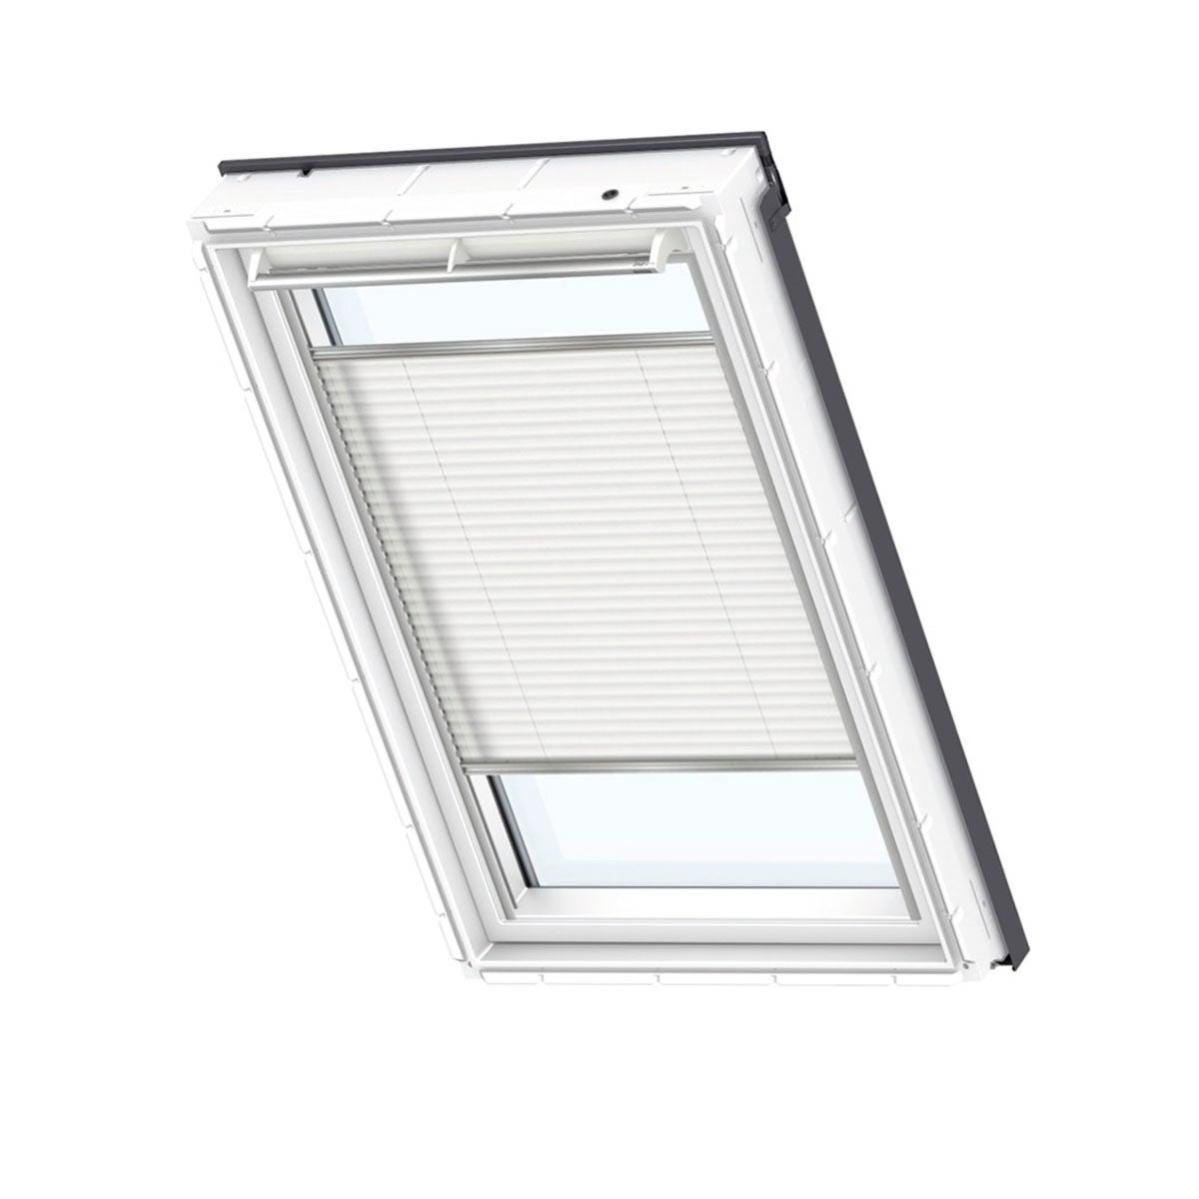 Tenda plissettata per finestra da tetto filtrante VELUX FHL P04 1016S L 94  x H 98 cm bianco